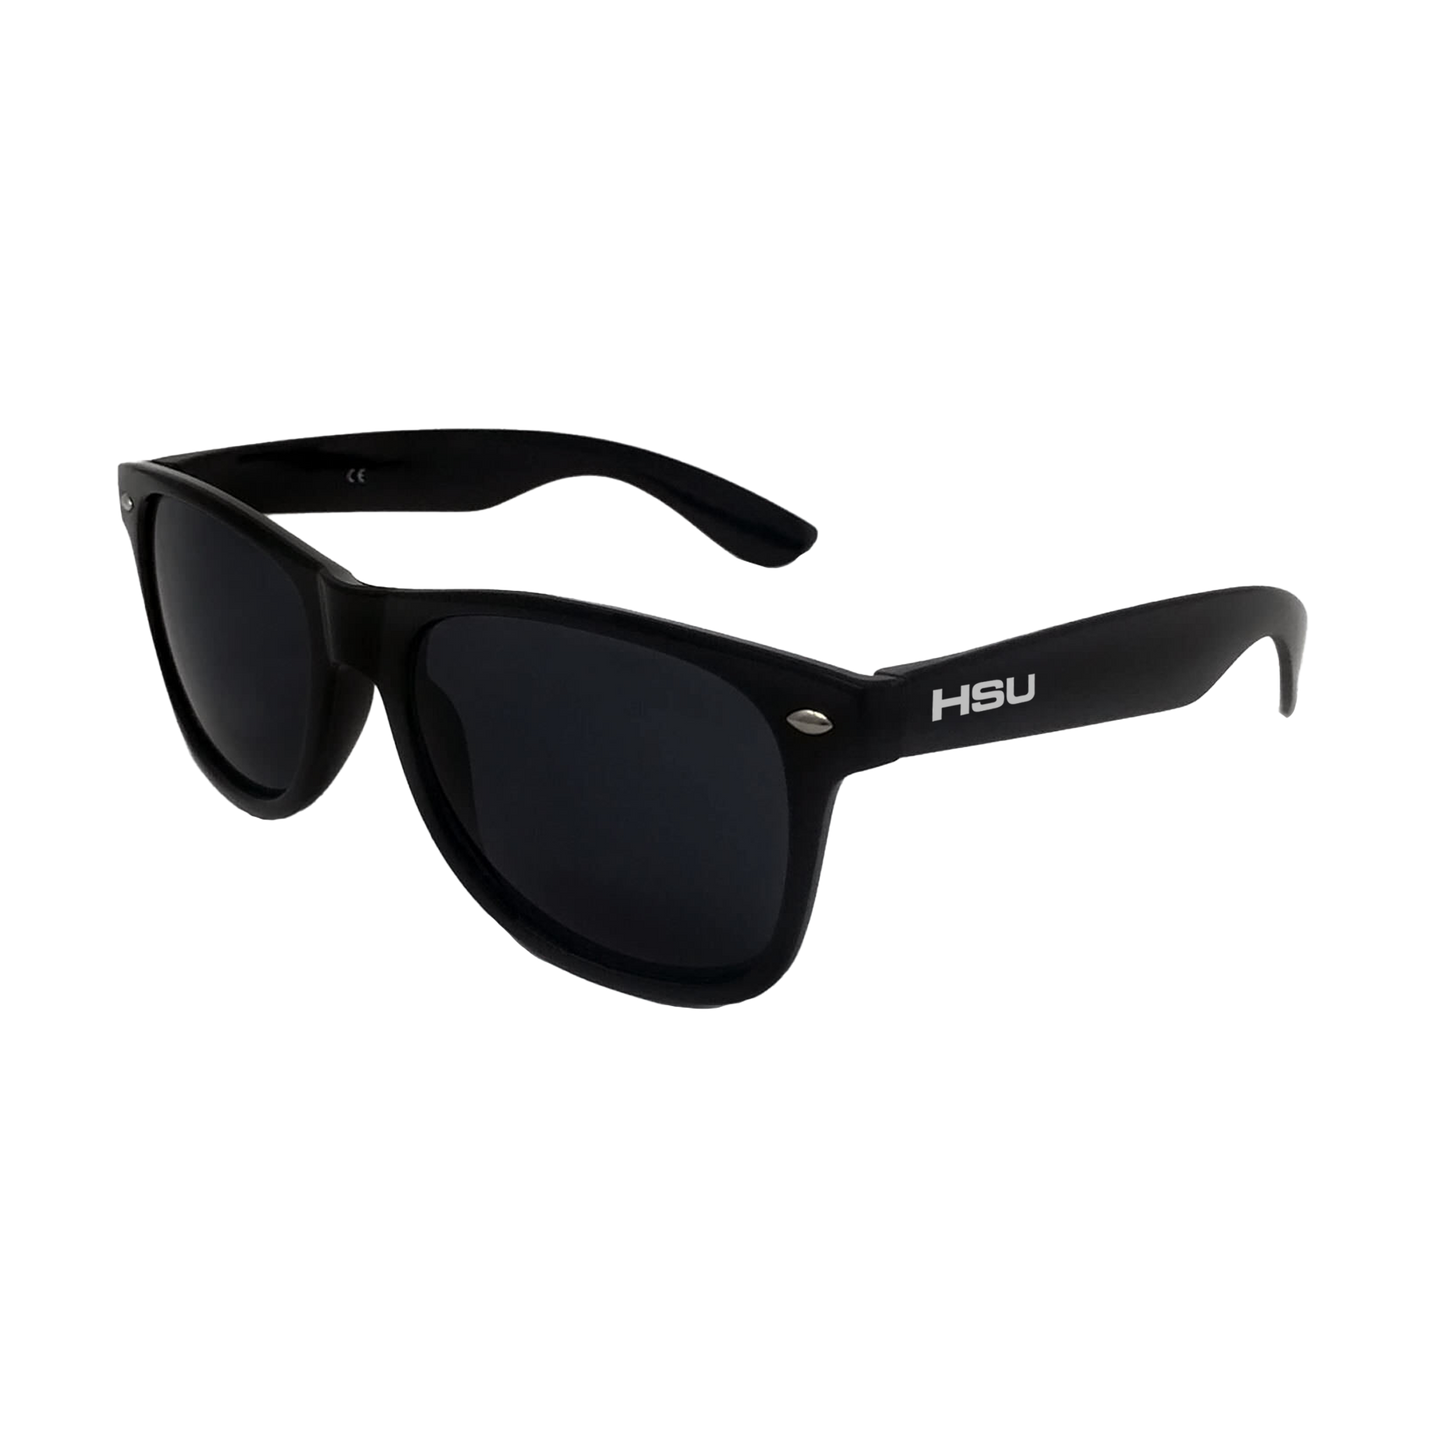 HSU Sunglasses x Blue Lens